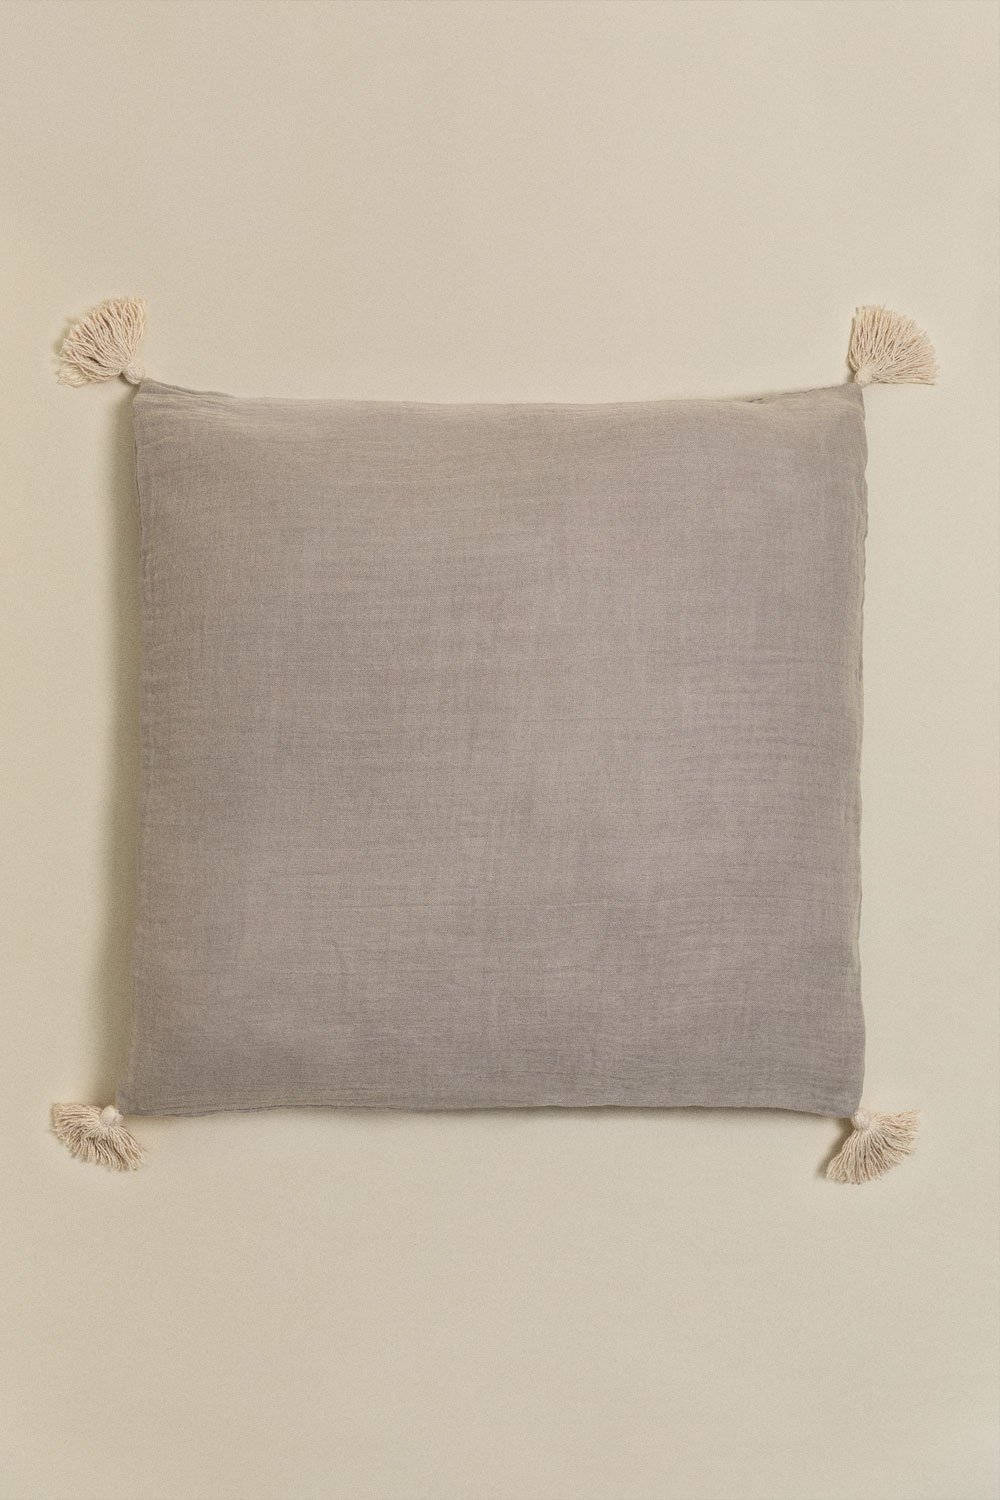 Cuscino quadrato in cotone (60x60 cm) Sozume, immagine della galleria 1